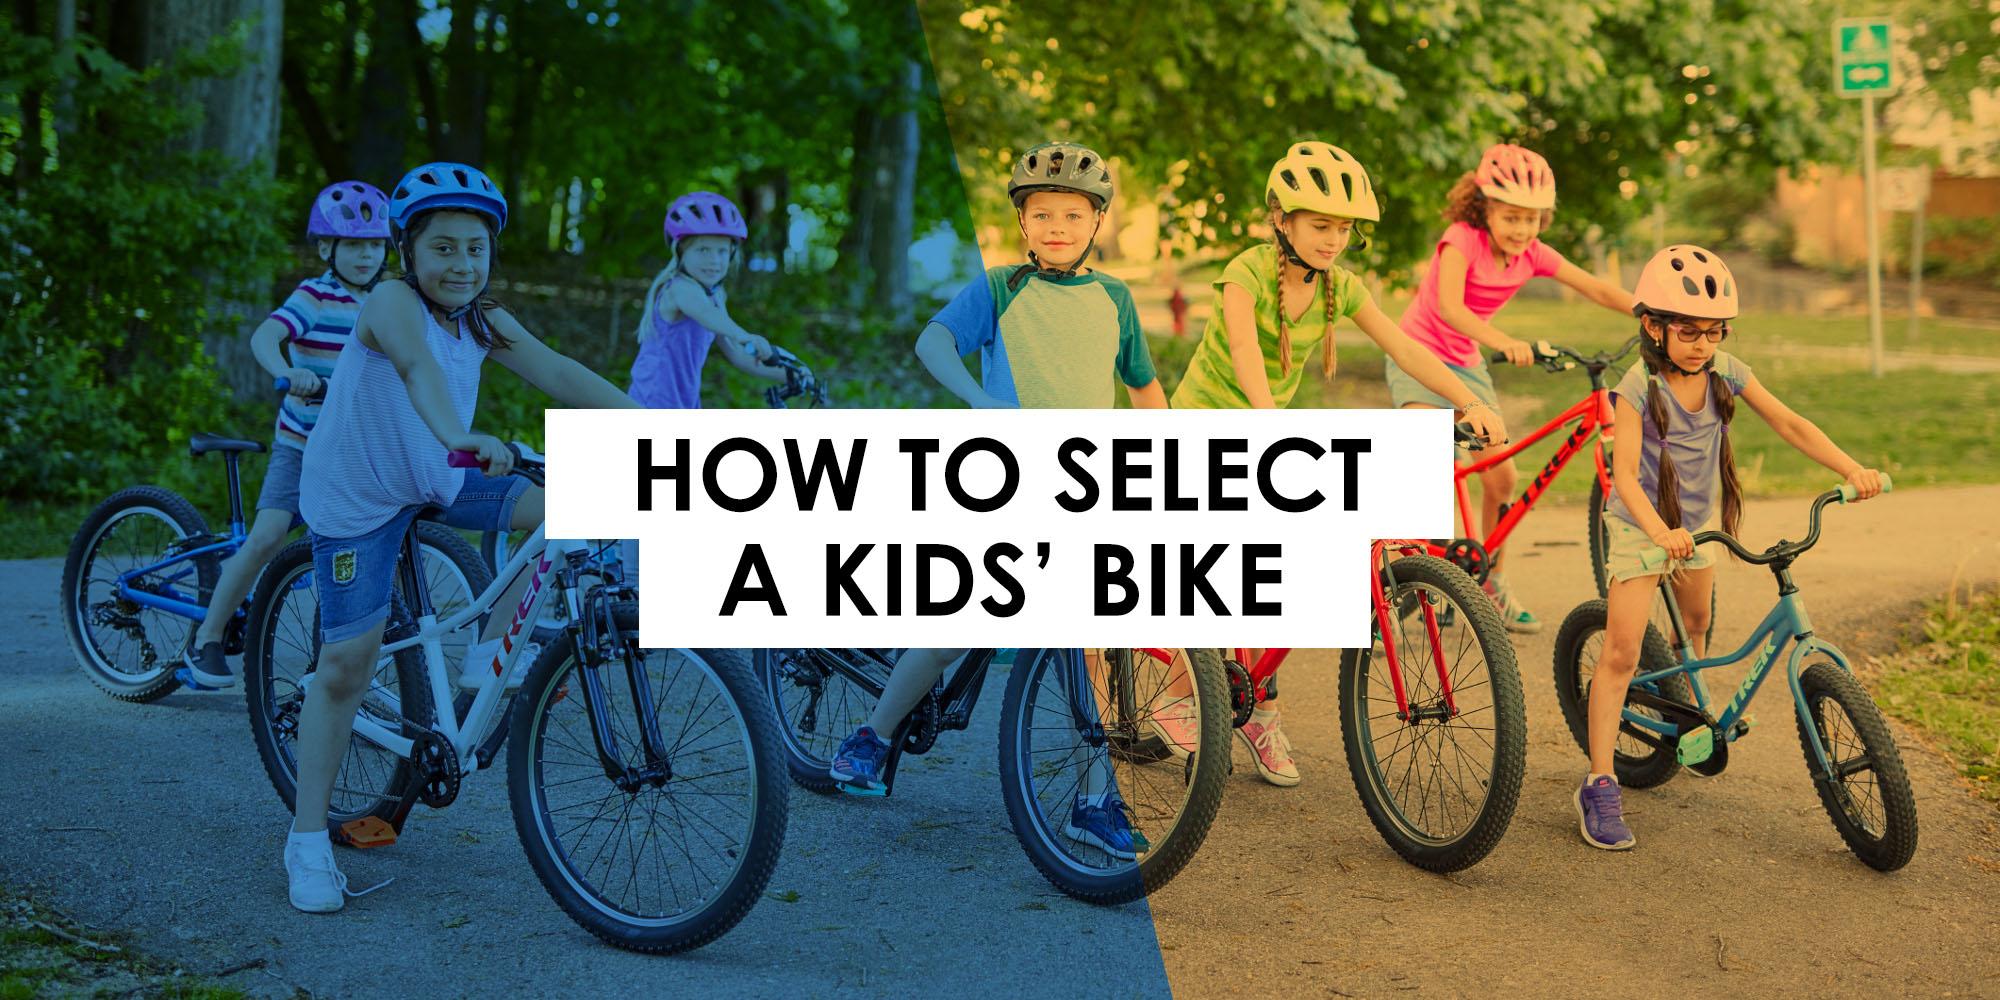 How to Select a Kids' Bike